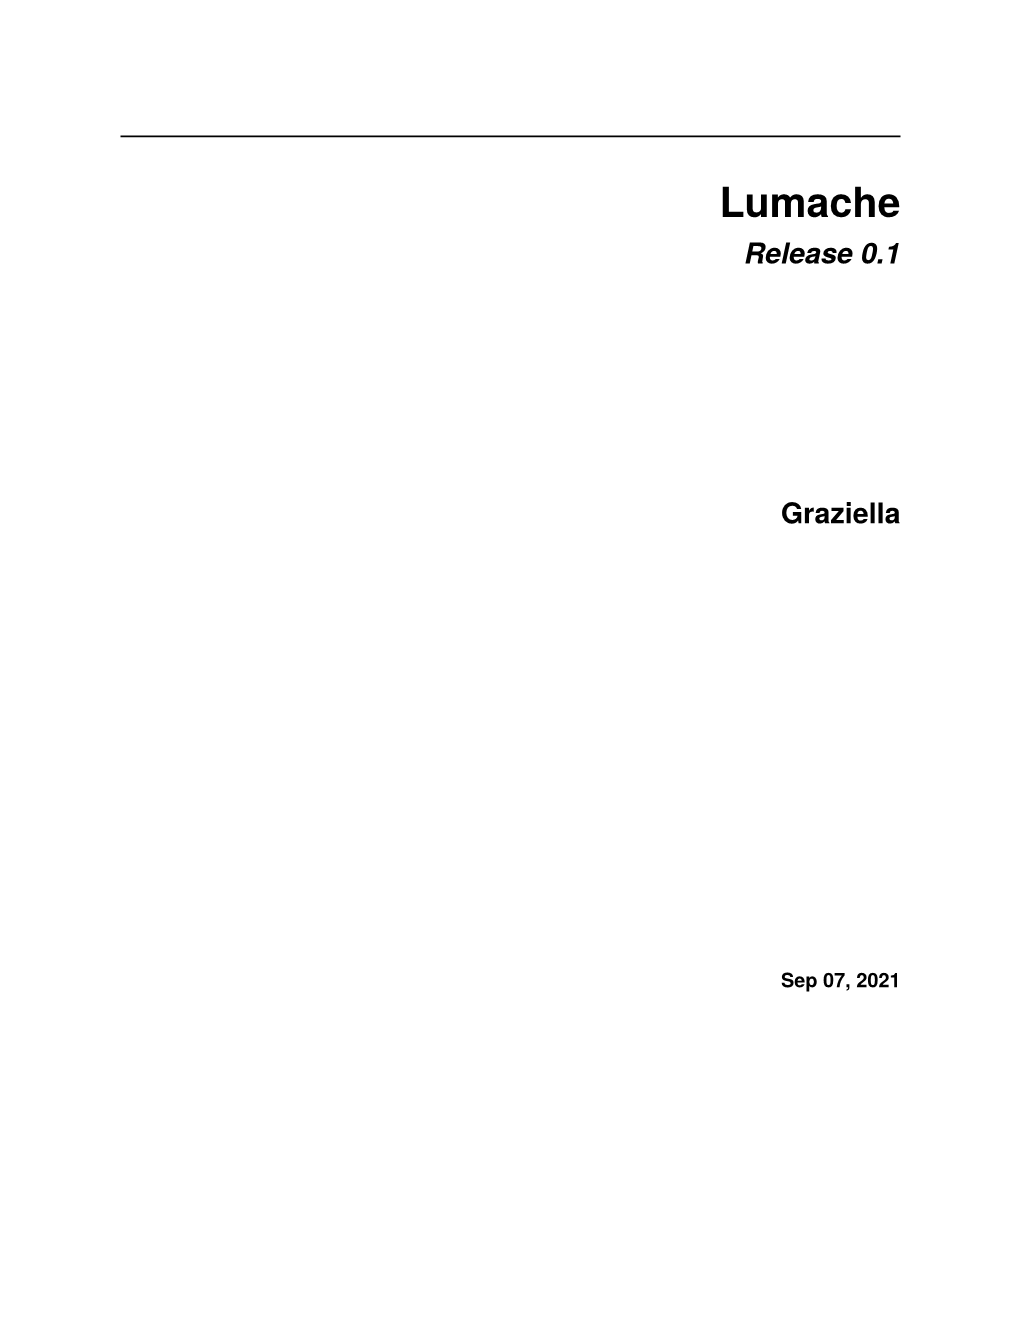 Lumache Release 0.1